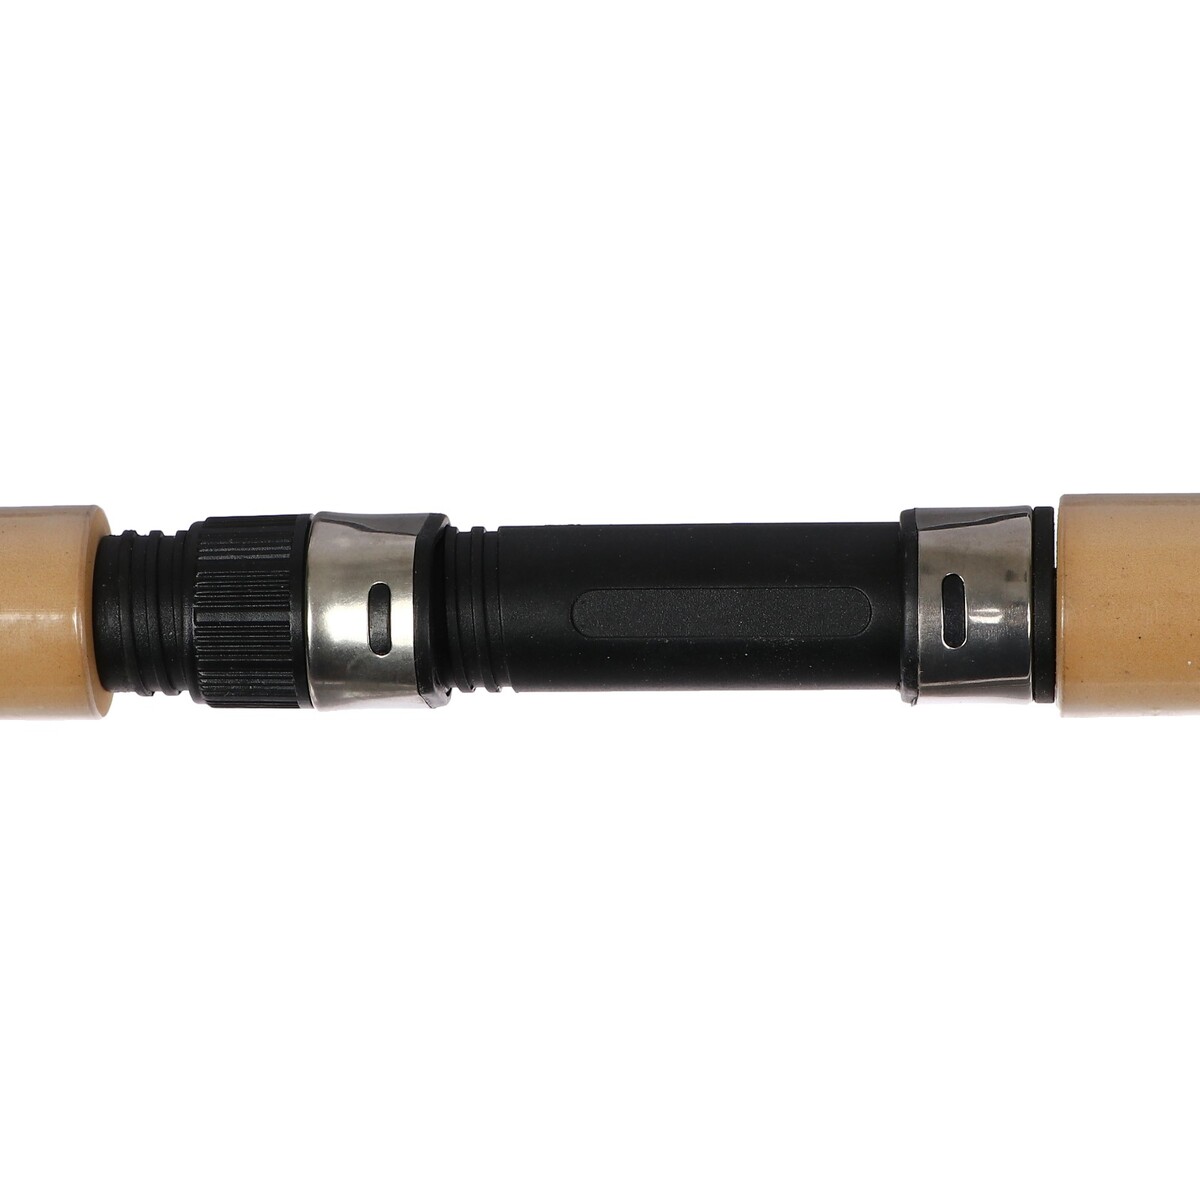 фото Удочка зимняя, телескопическая, ручка неопрен, длина 75 см, hfb-27 no brand